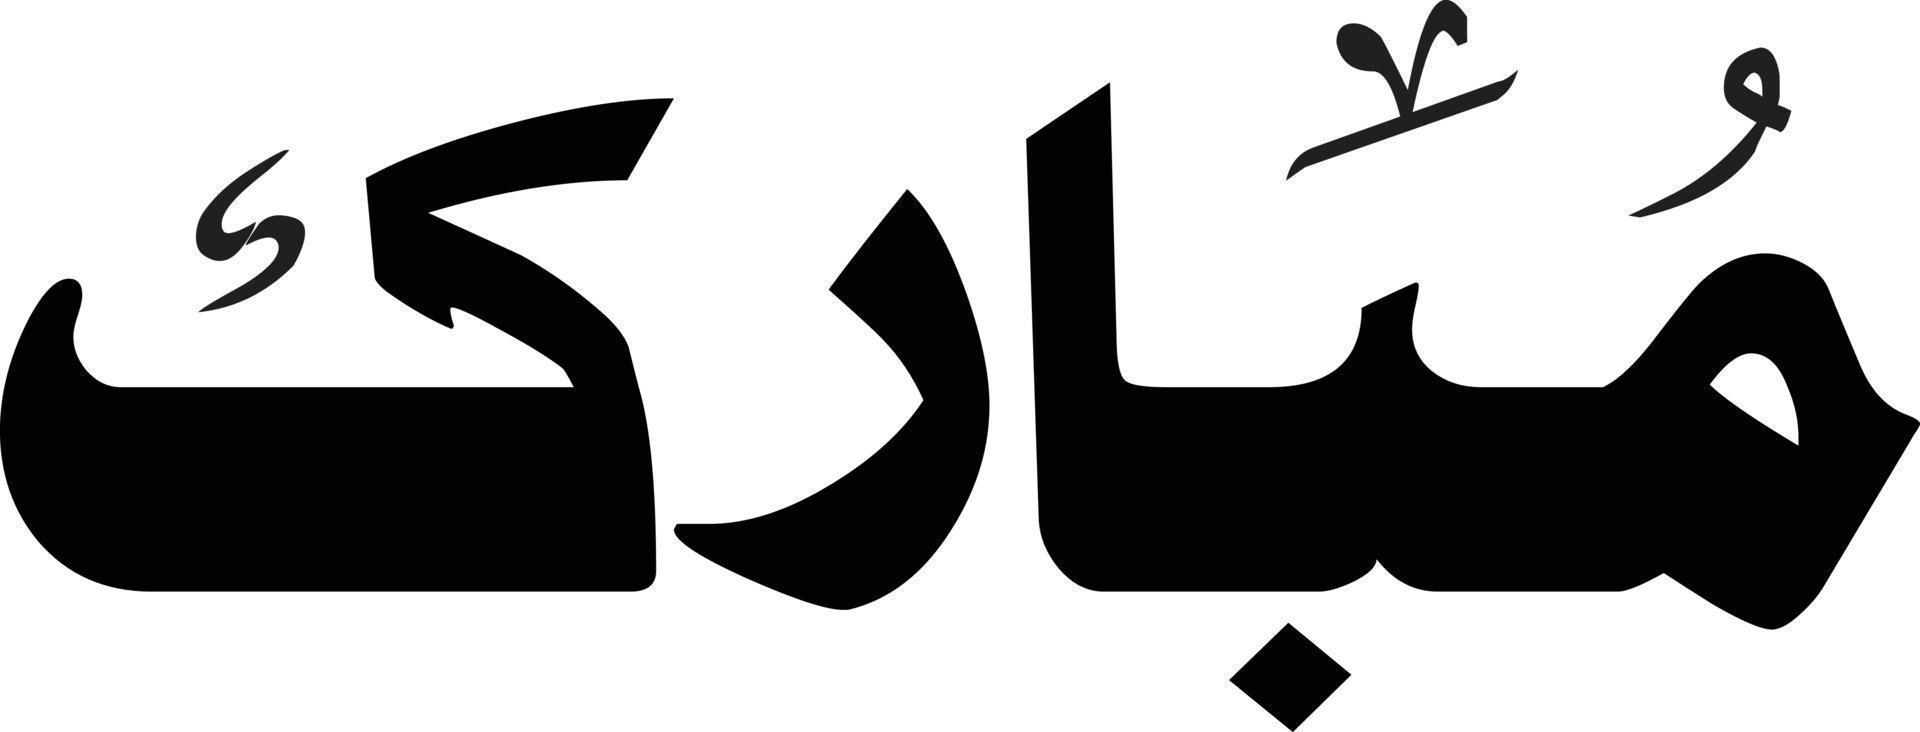 mubarak título islámico urdu árabe caligrafía vector libre